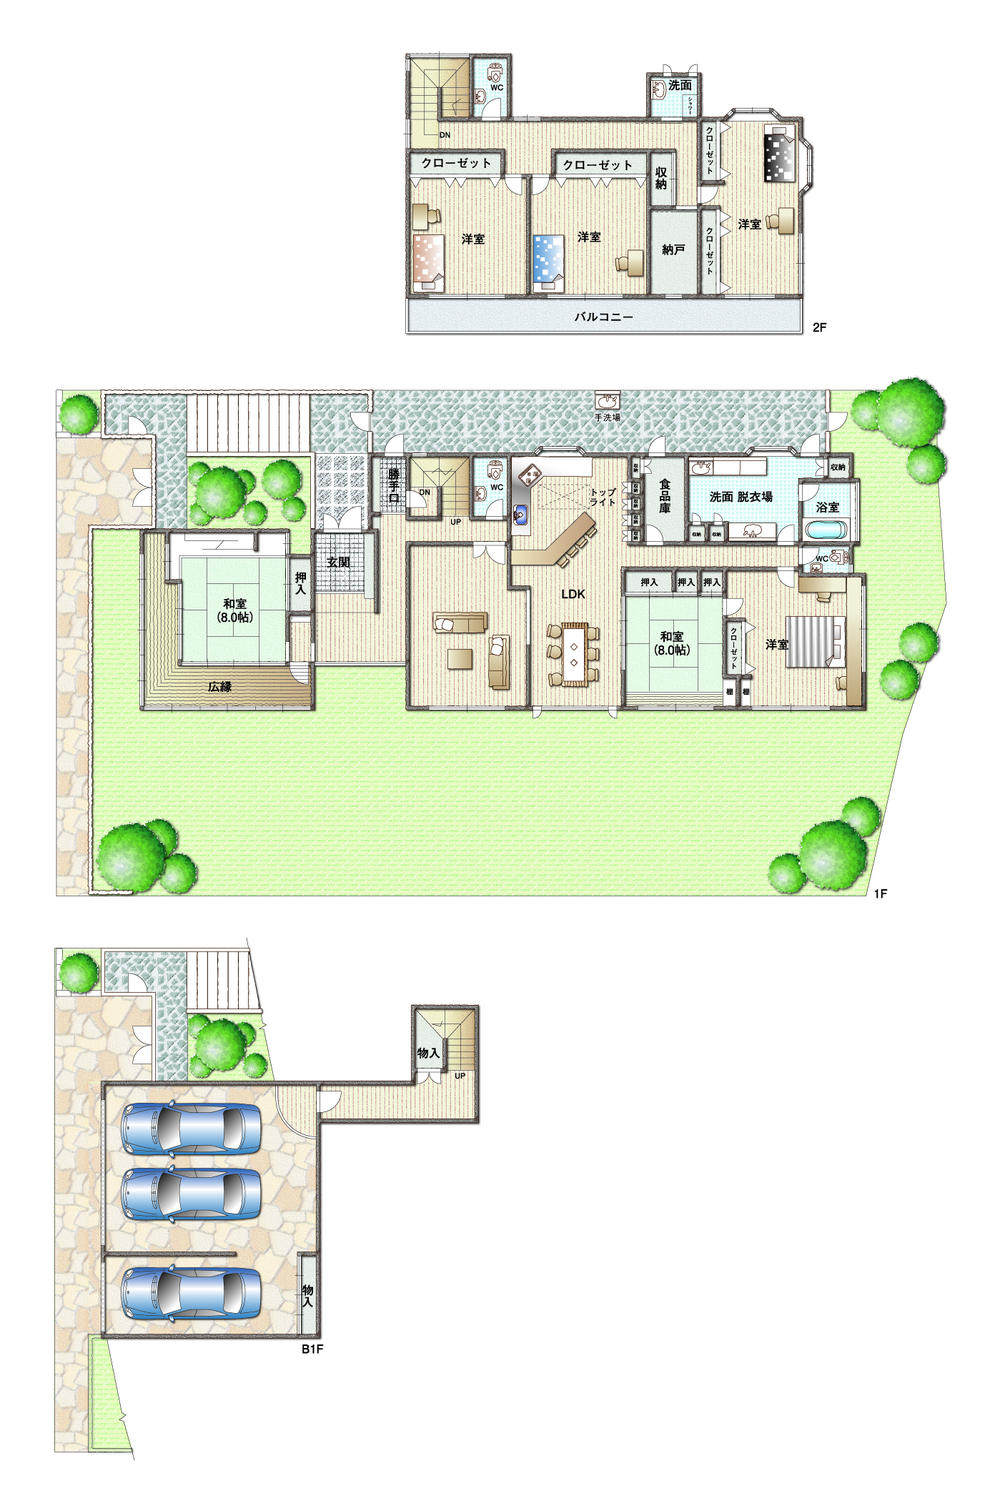 Floor plan. 72,800,000 yen, 7LDK + S (storeroom), Land area 608.21 sq m , Building area 399.97 sq m